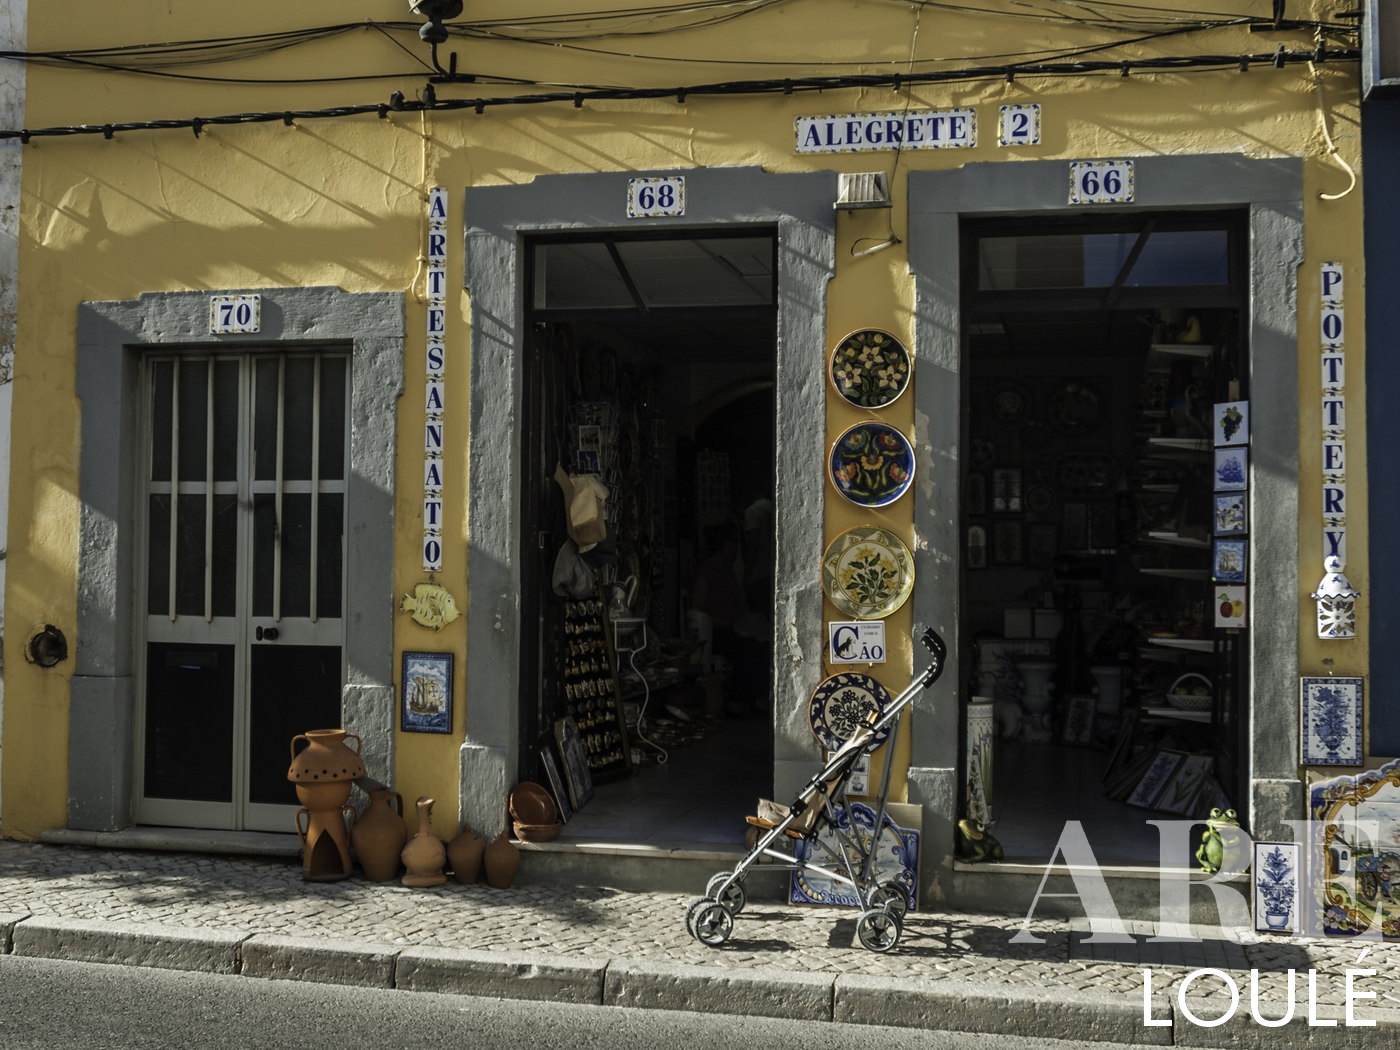 Paseando por las calles de Loulé encontramos varias tiendas de artesanía tradicional